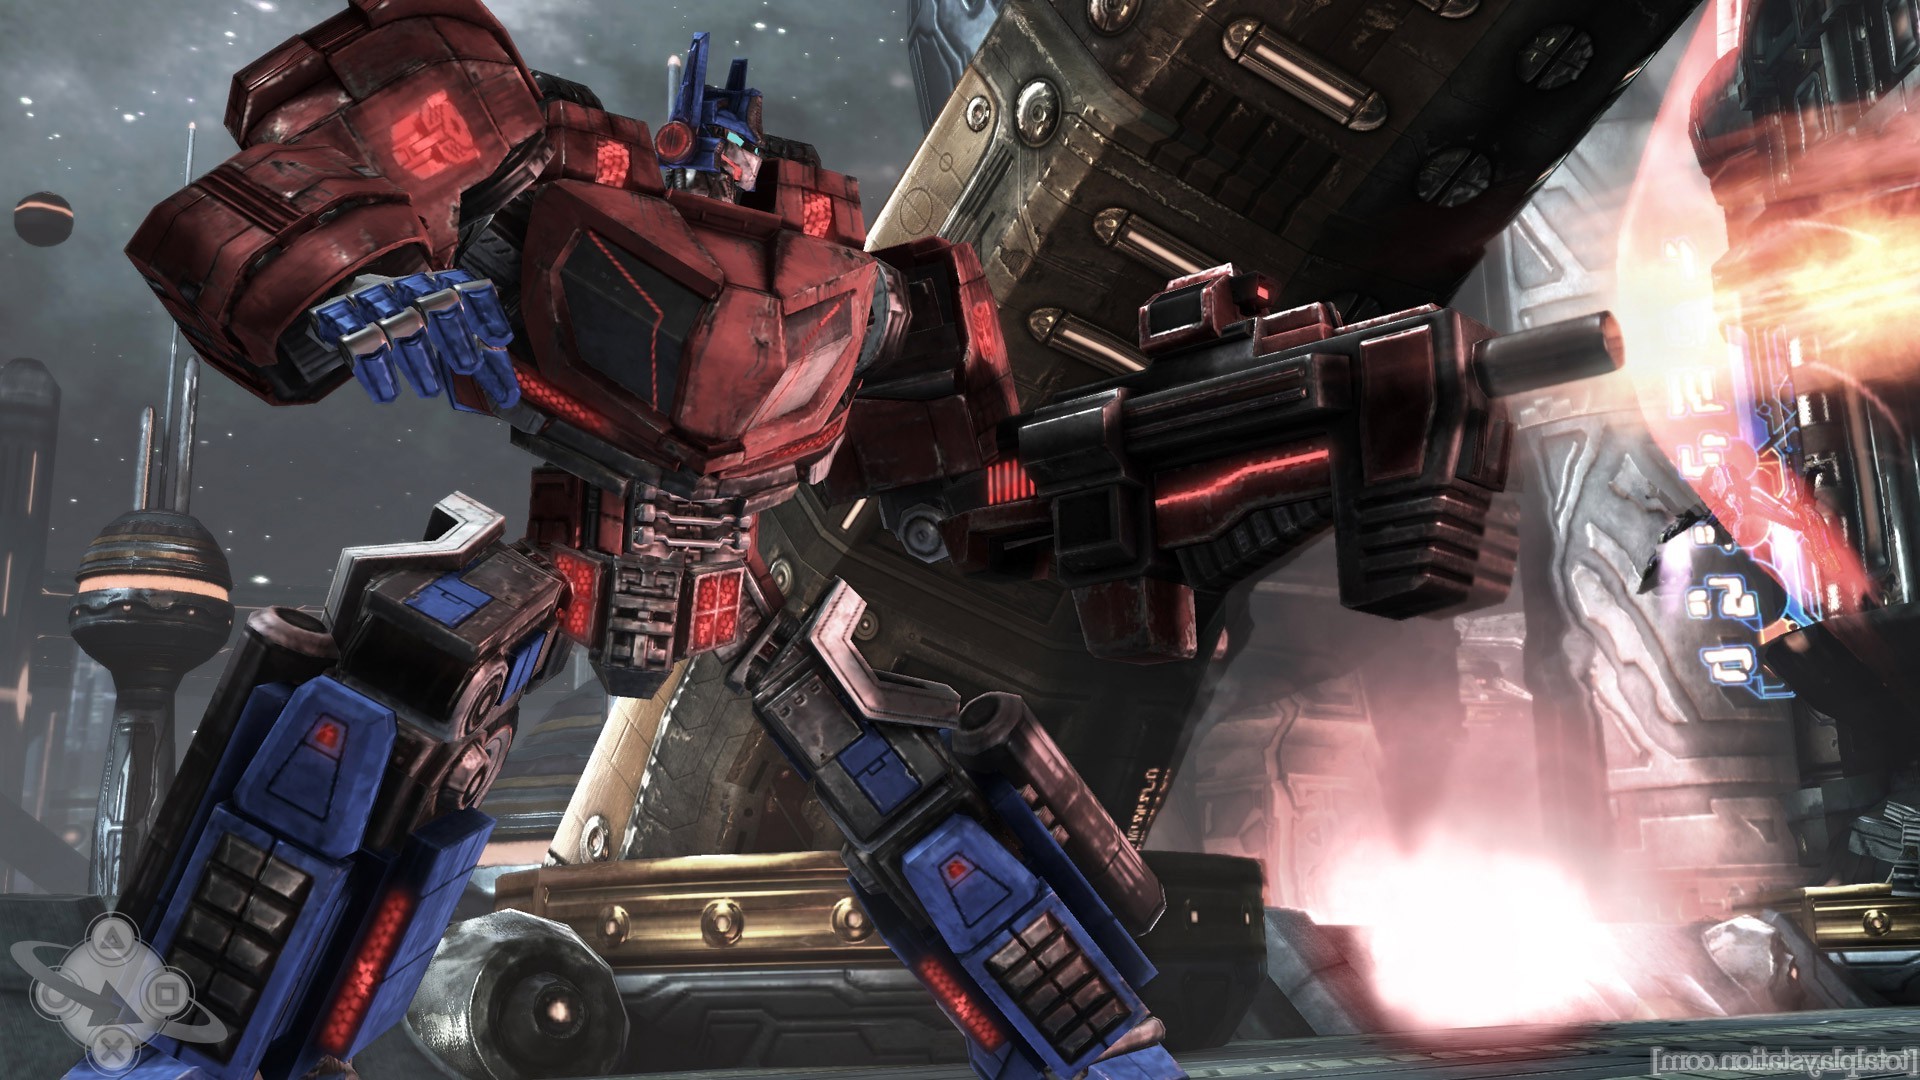 Transformers, Optimus Prime Wallpaper